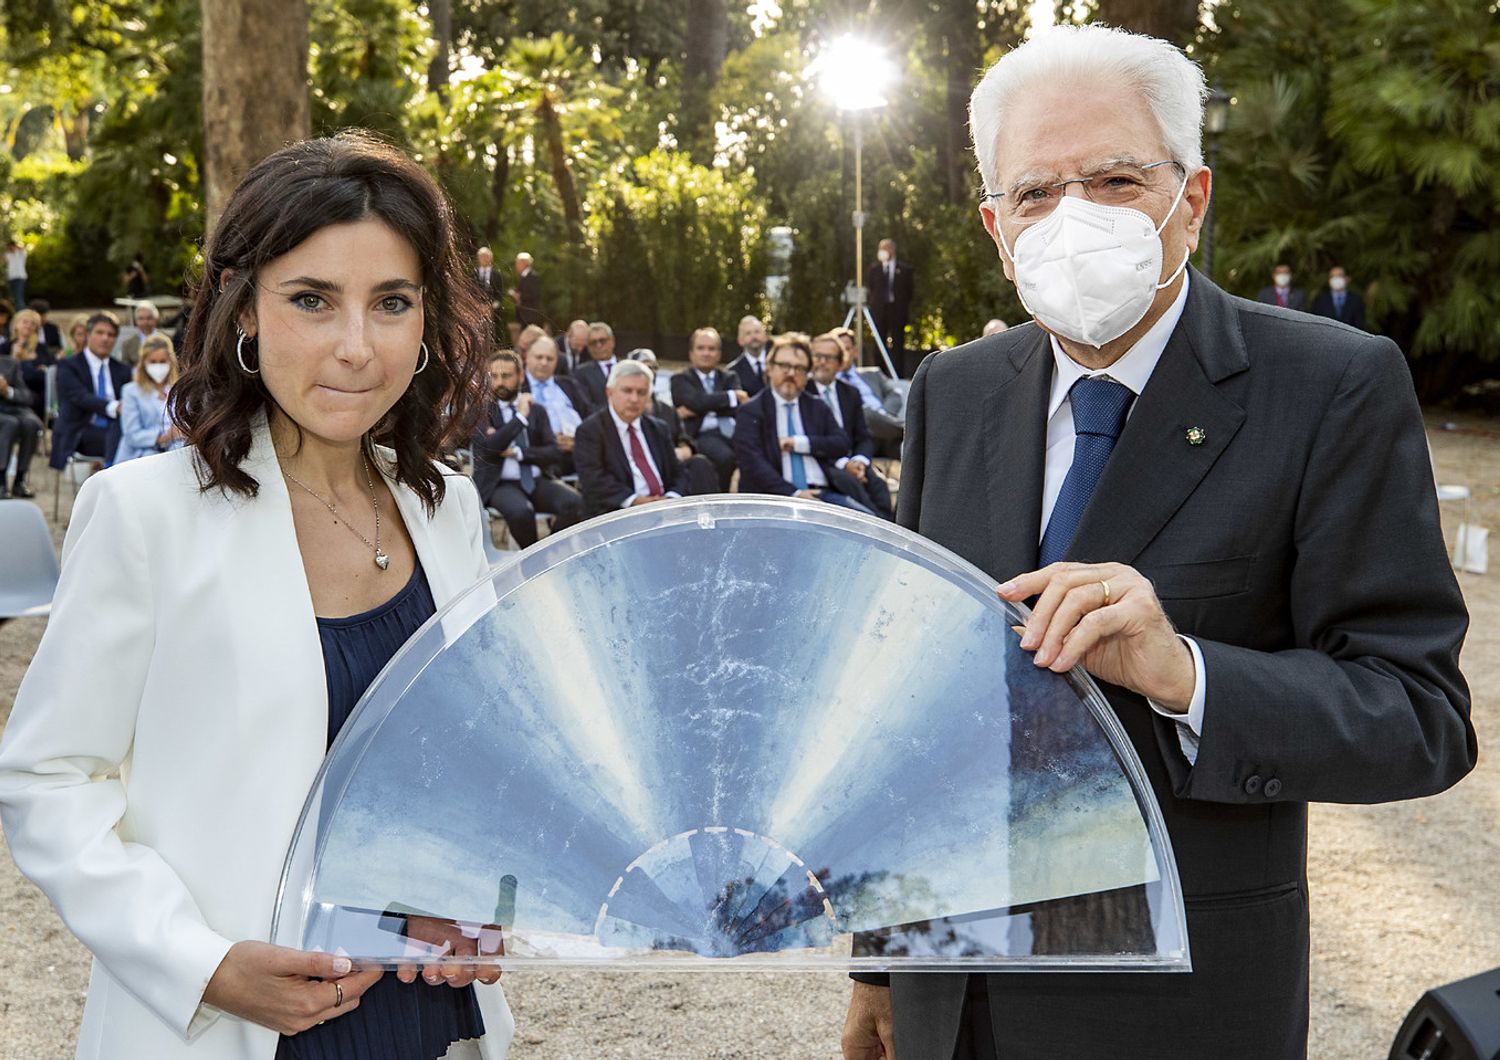 Il Presidente Sergio Mattarella con Virginia Lorenzetti, autrice del&ldquo;Ventaglio del Presidente&rdquo; edizione 2021&nbsp;